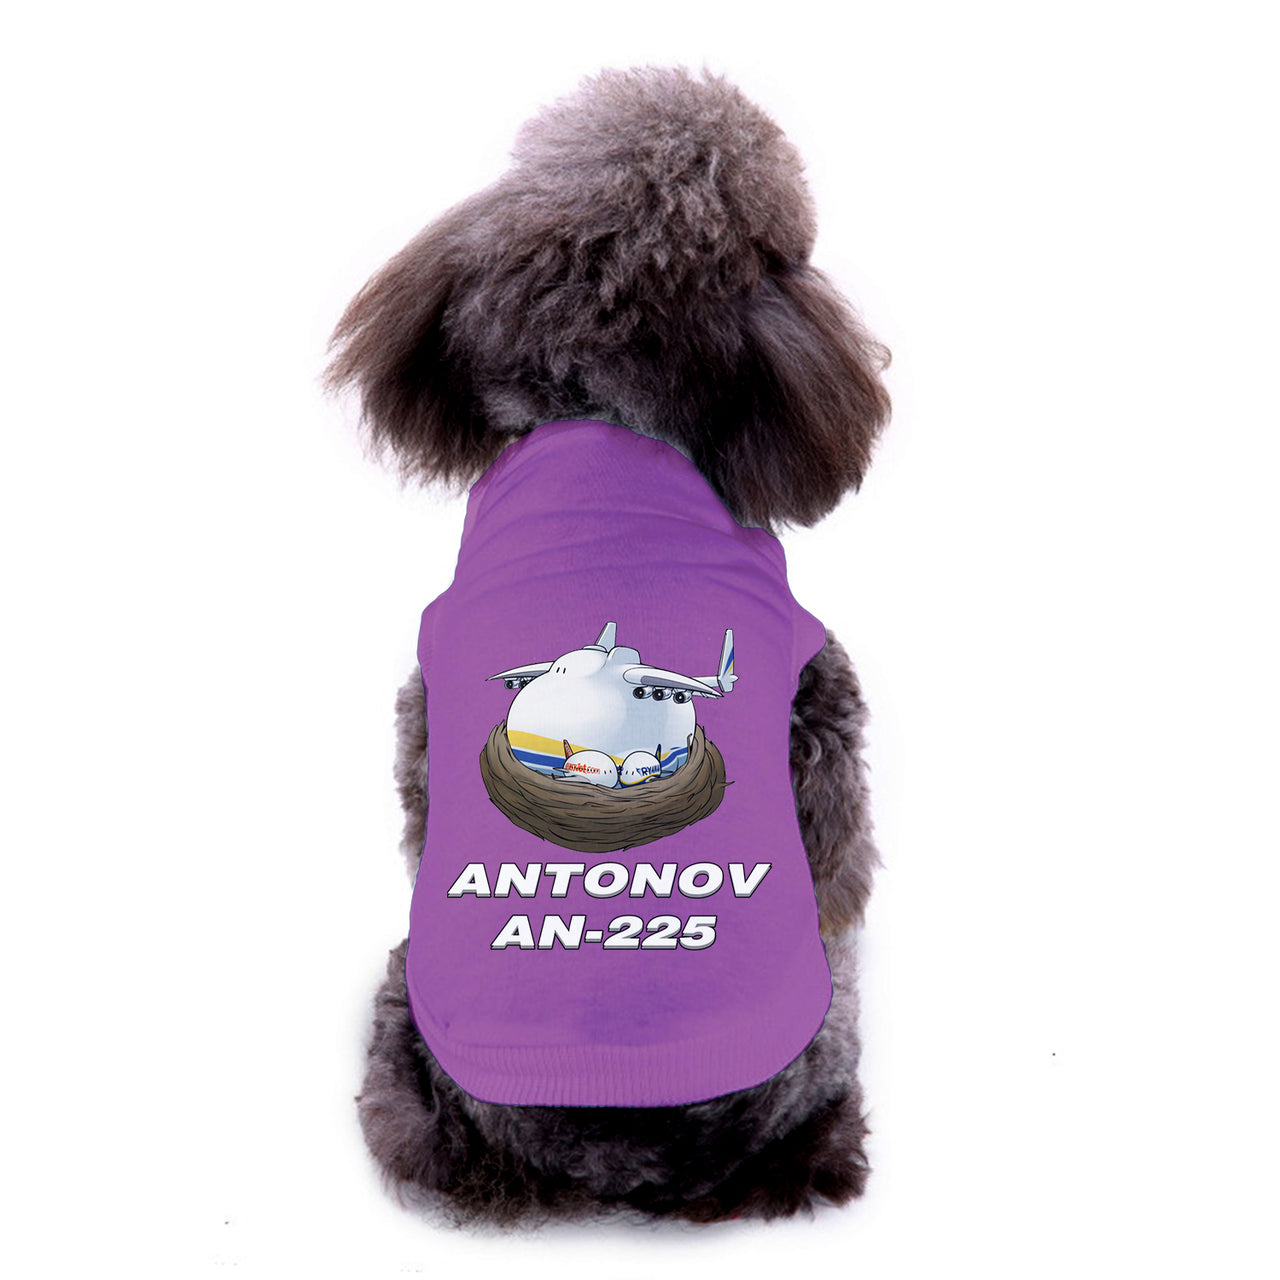 Antonov AN-225 (22) Designed Dog Pet Vests